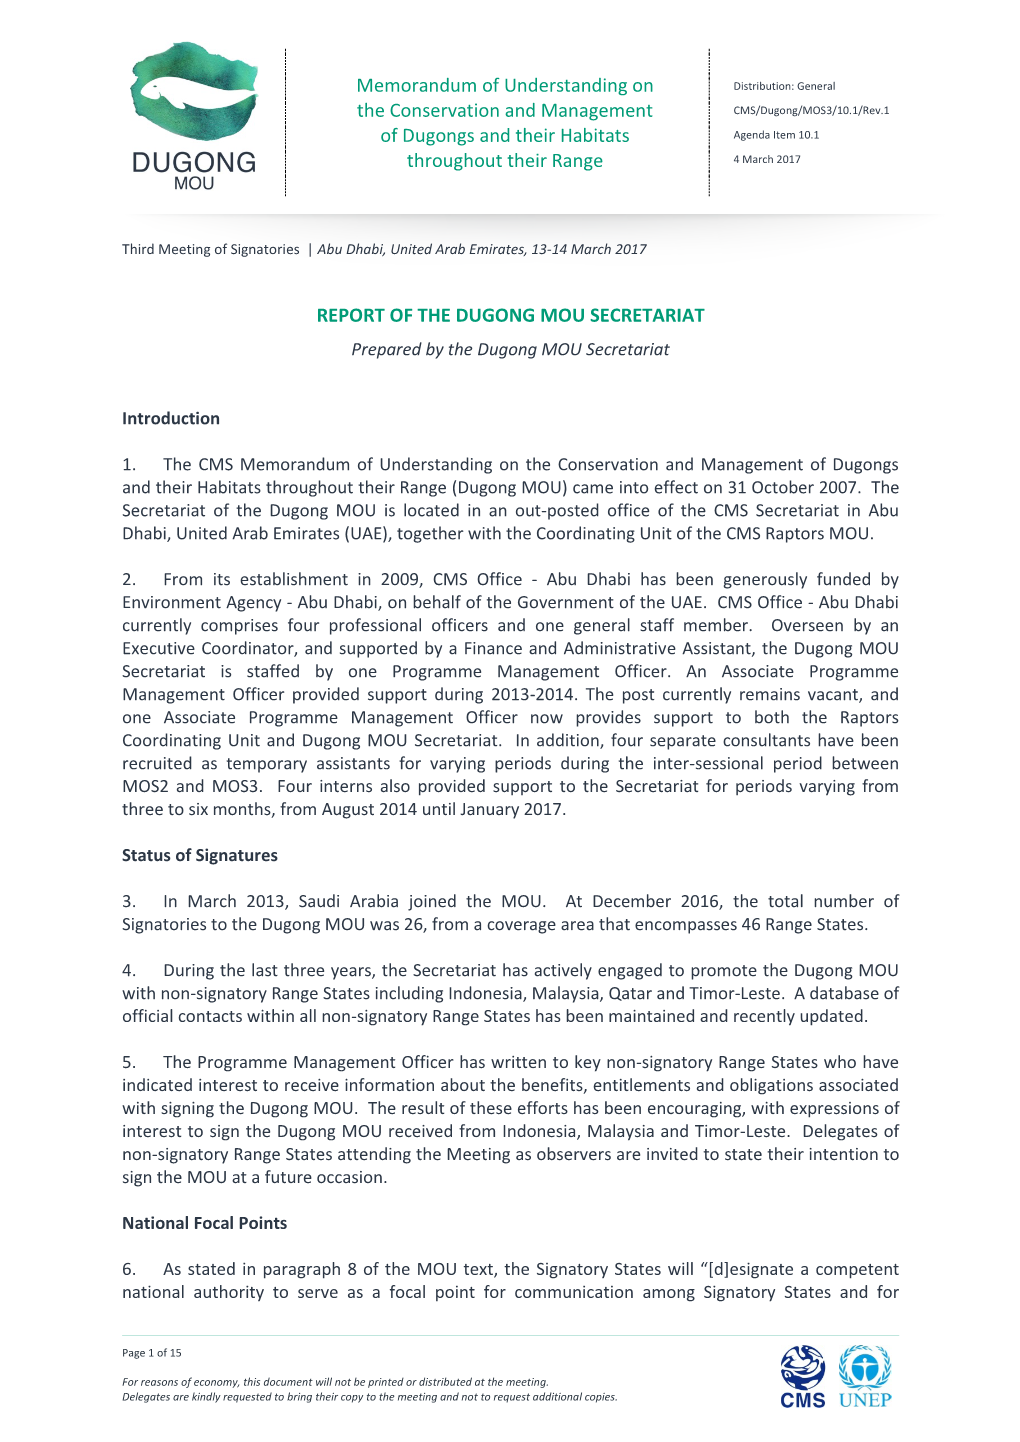 REPORT of the DUGONG MOU SECRETARIAT Prepared by the Dugong MOU Secretariat